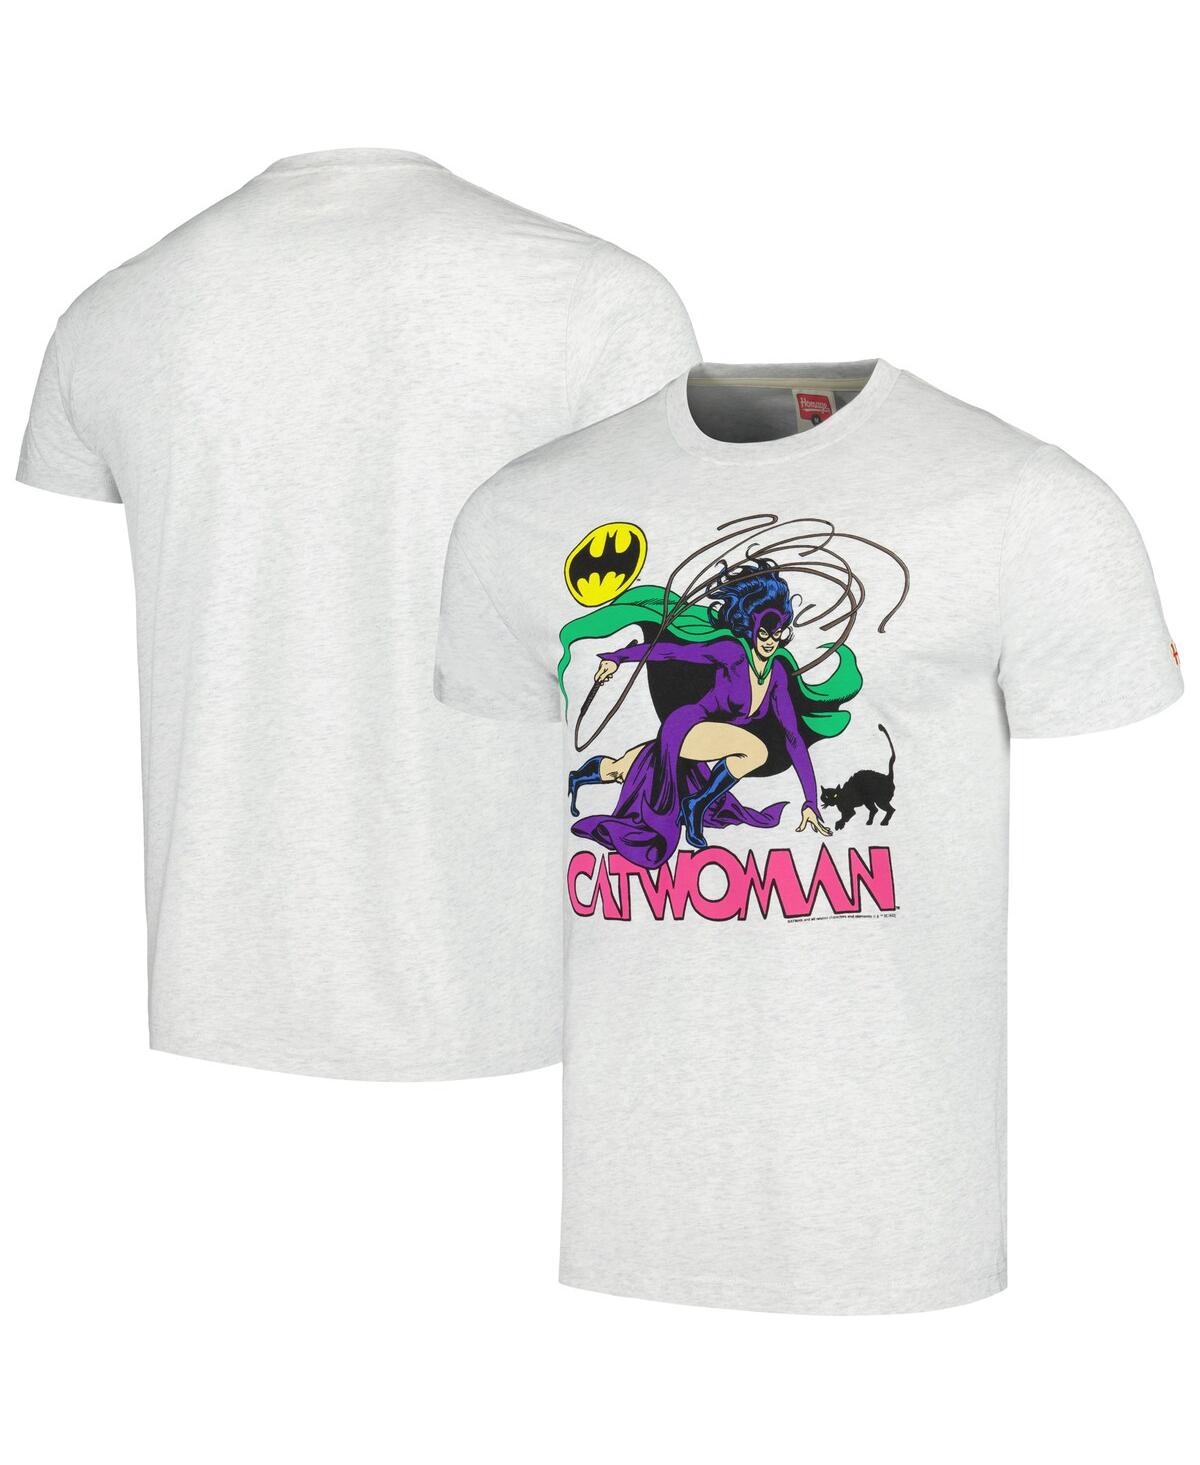 Shop Homage Men's  Ash Catwoman Tri-blend T-shirt